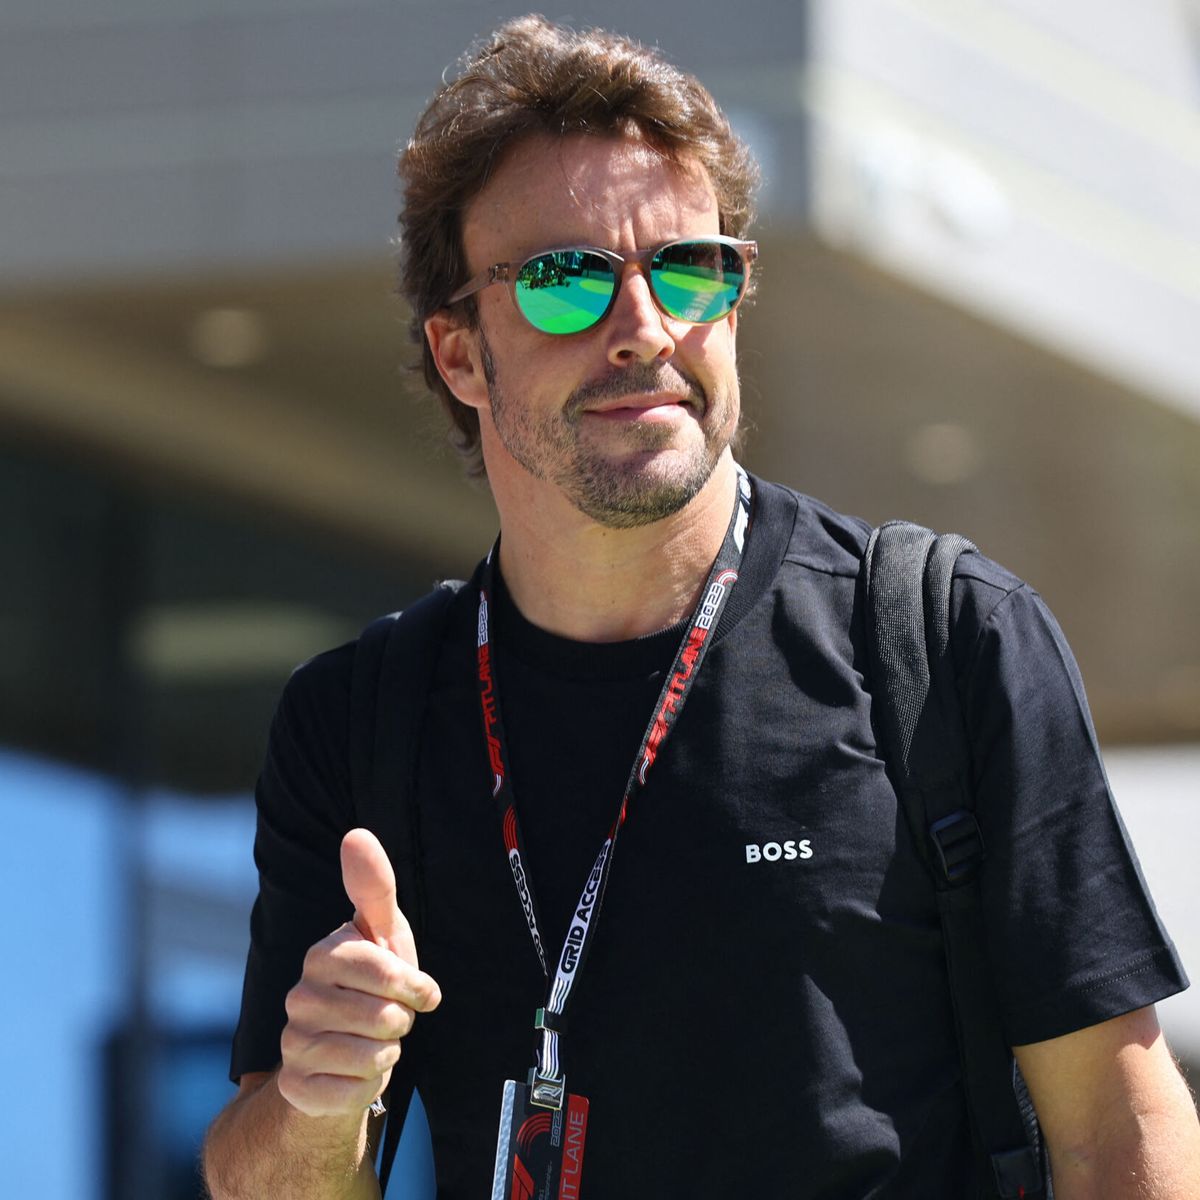 Teme Aston Martin que Fernando Alonso se marche a Mercedes? La